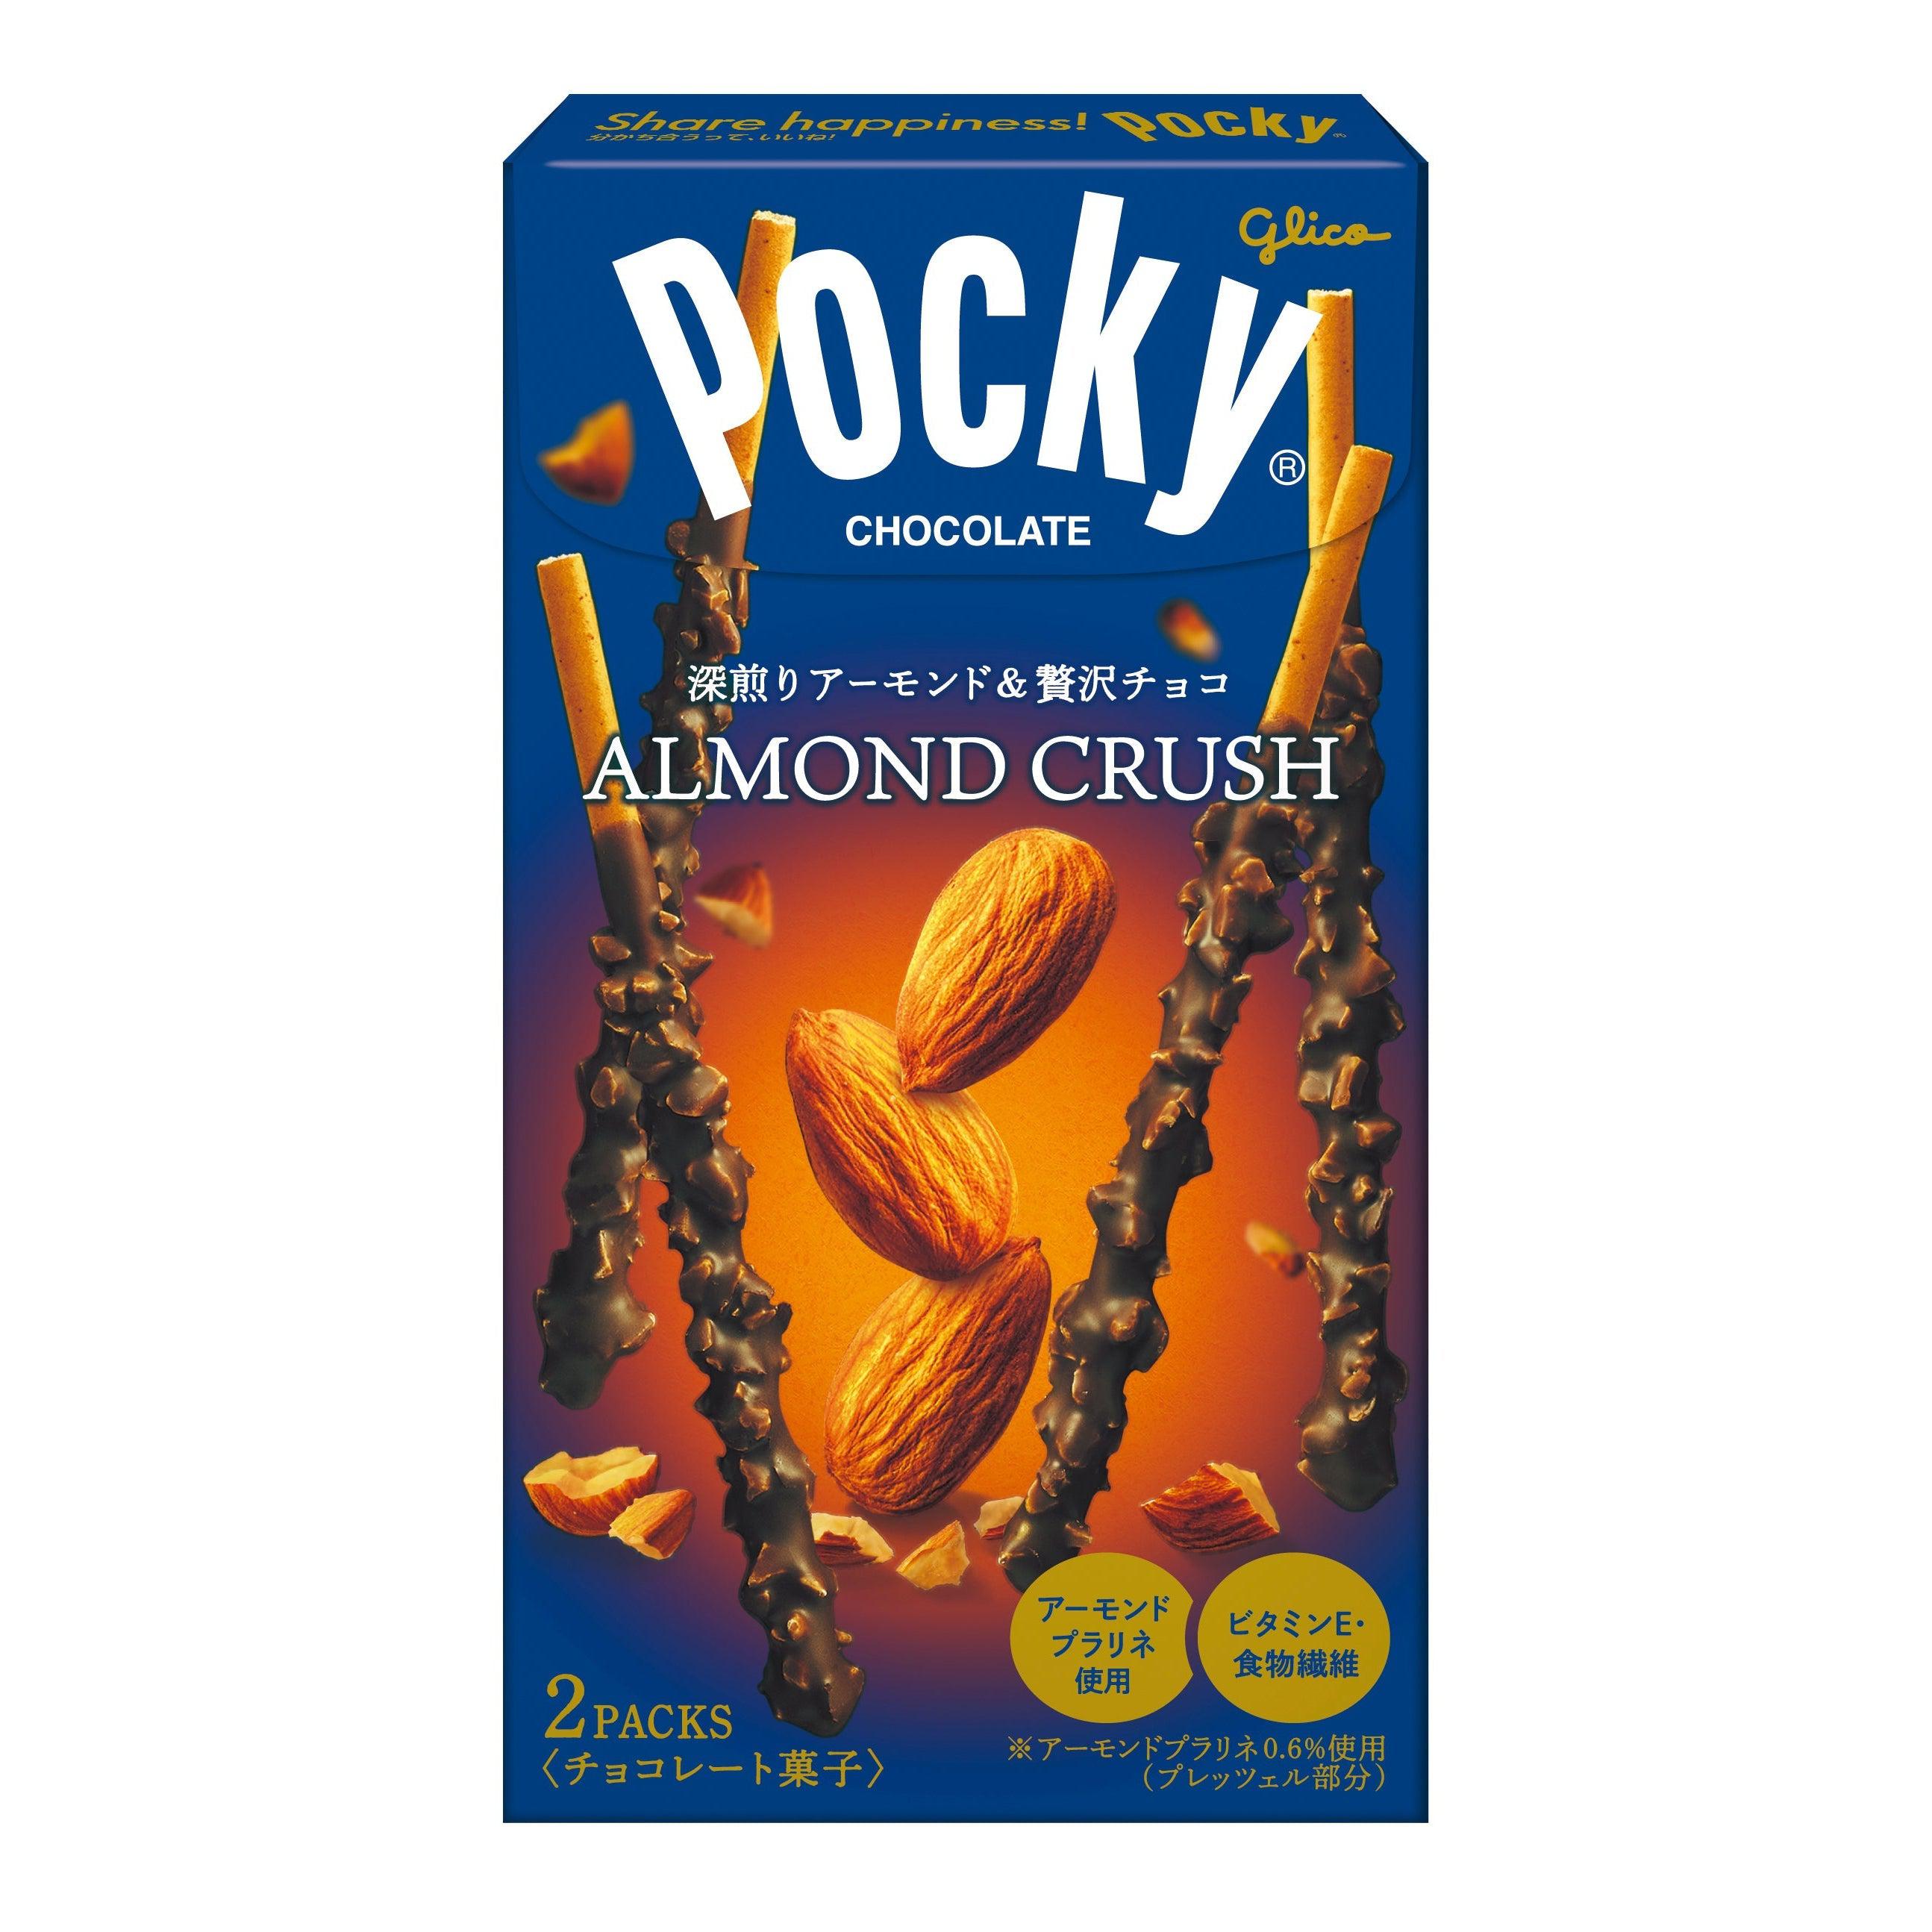 Glico Pocky Almond Crush Chocolate Sticks Snack 46.2g (Pack of 5), Japanese Taste